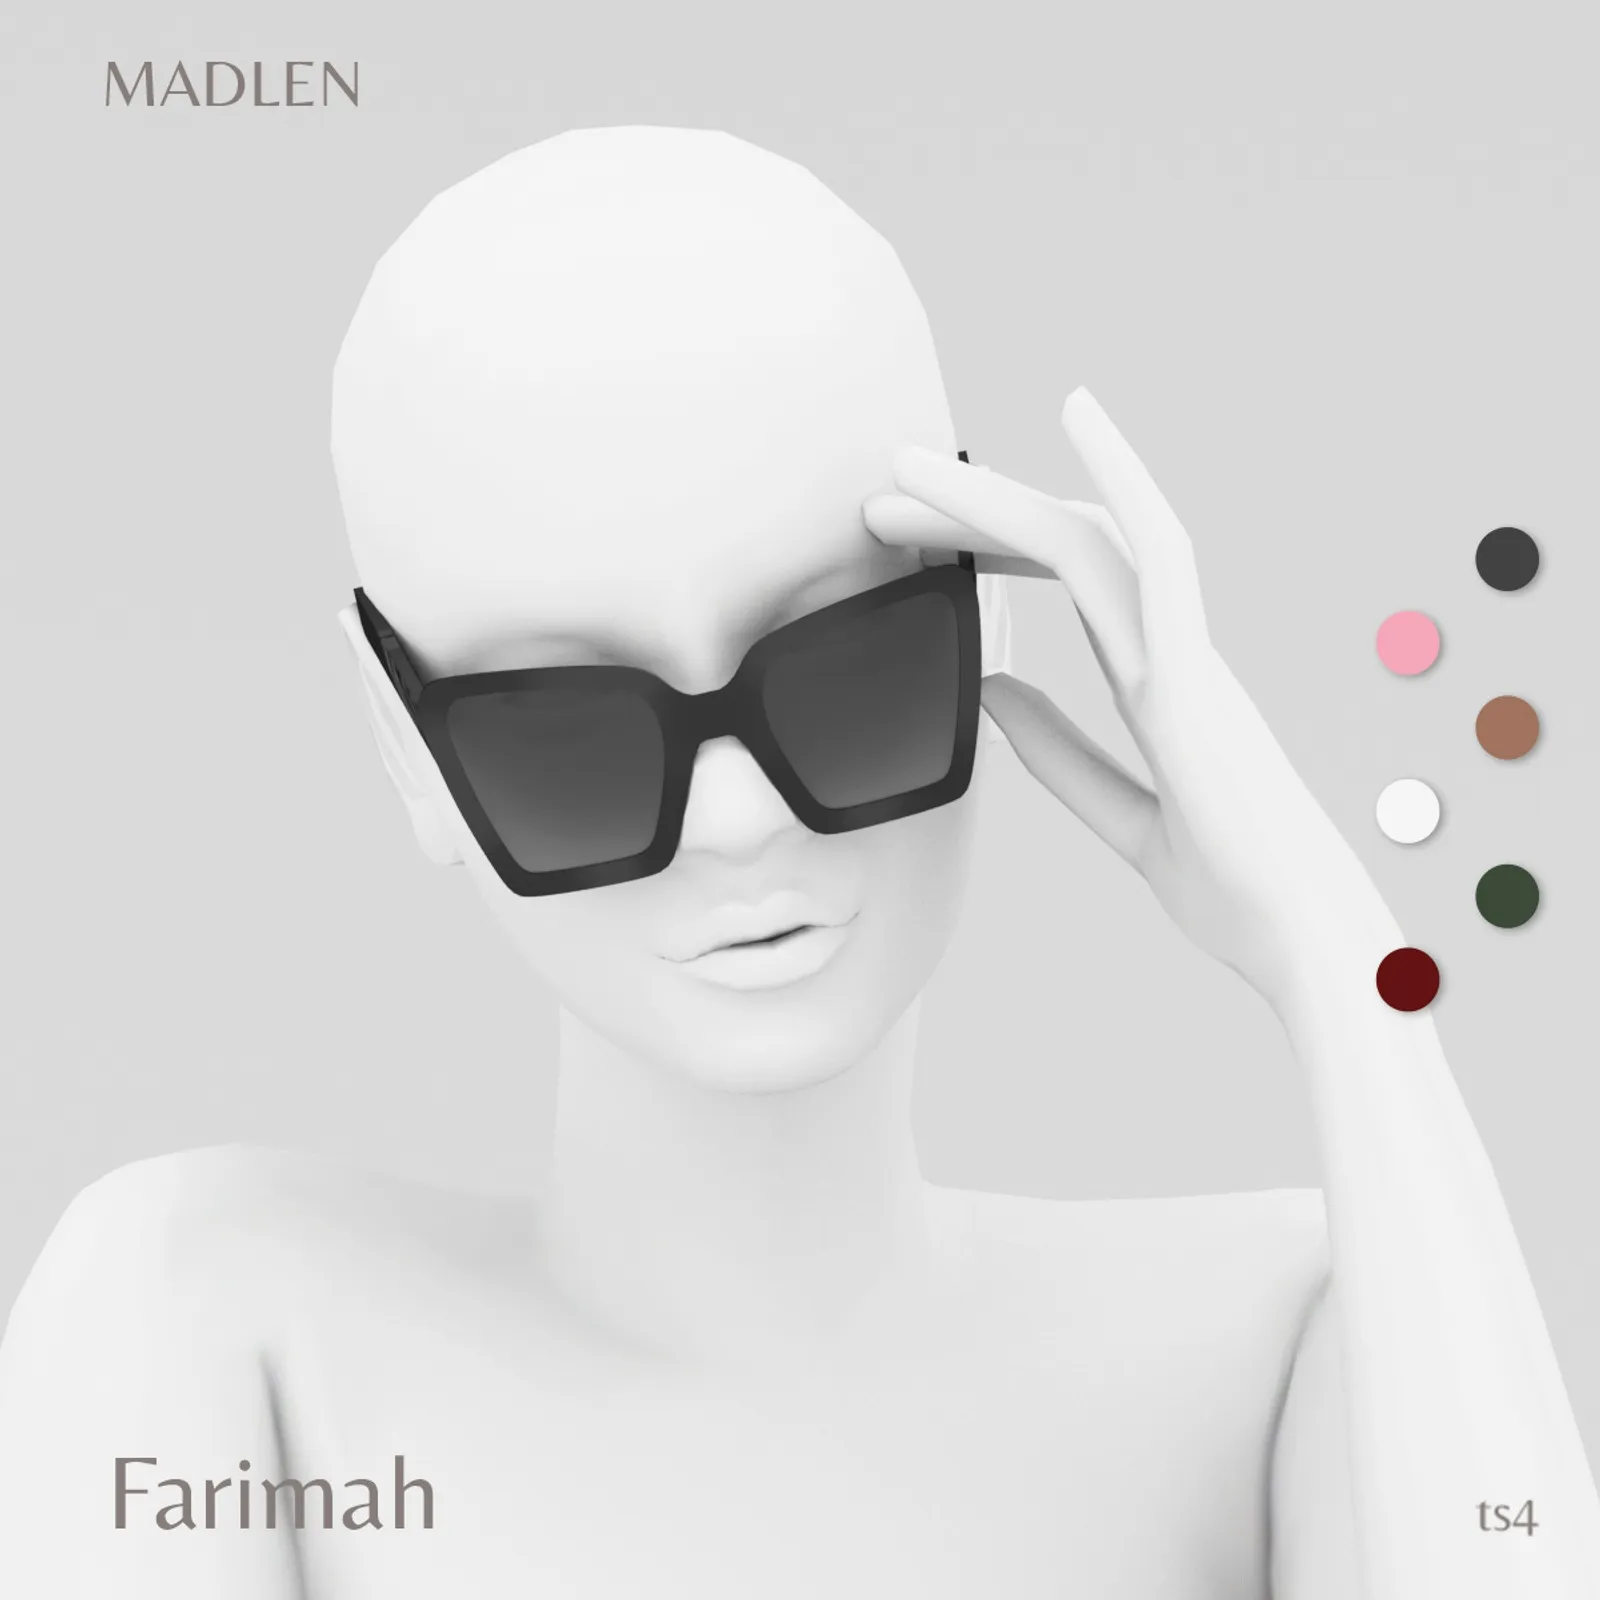 Farimah Sunglasses